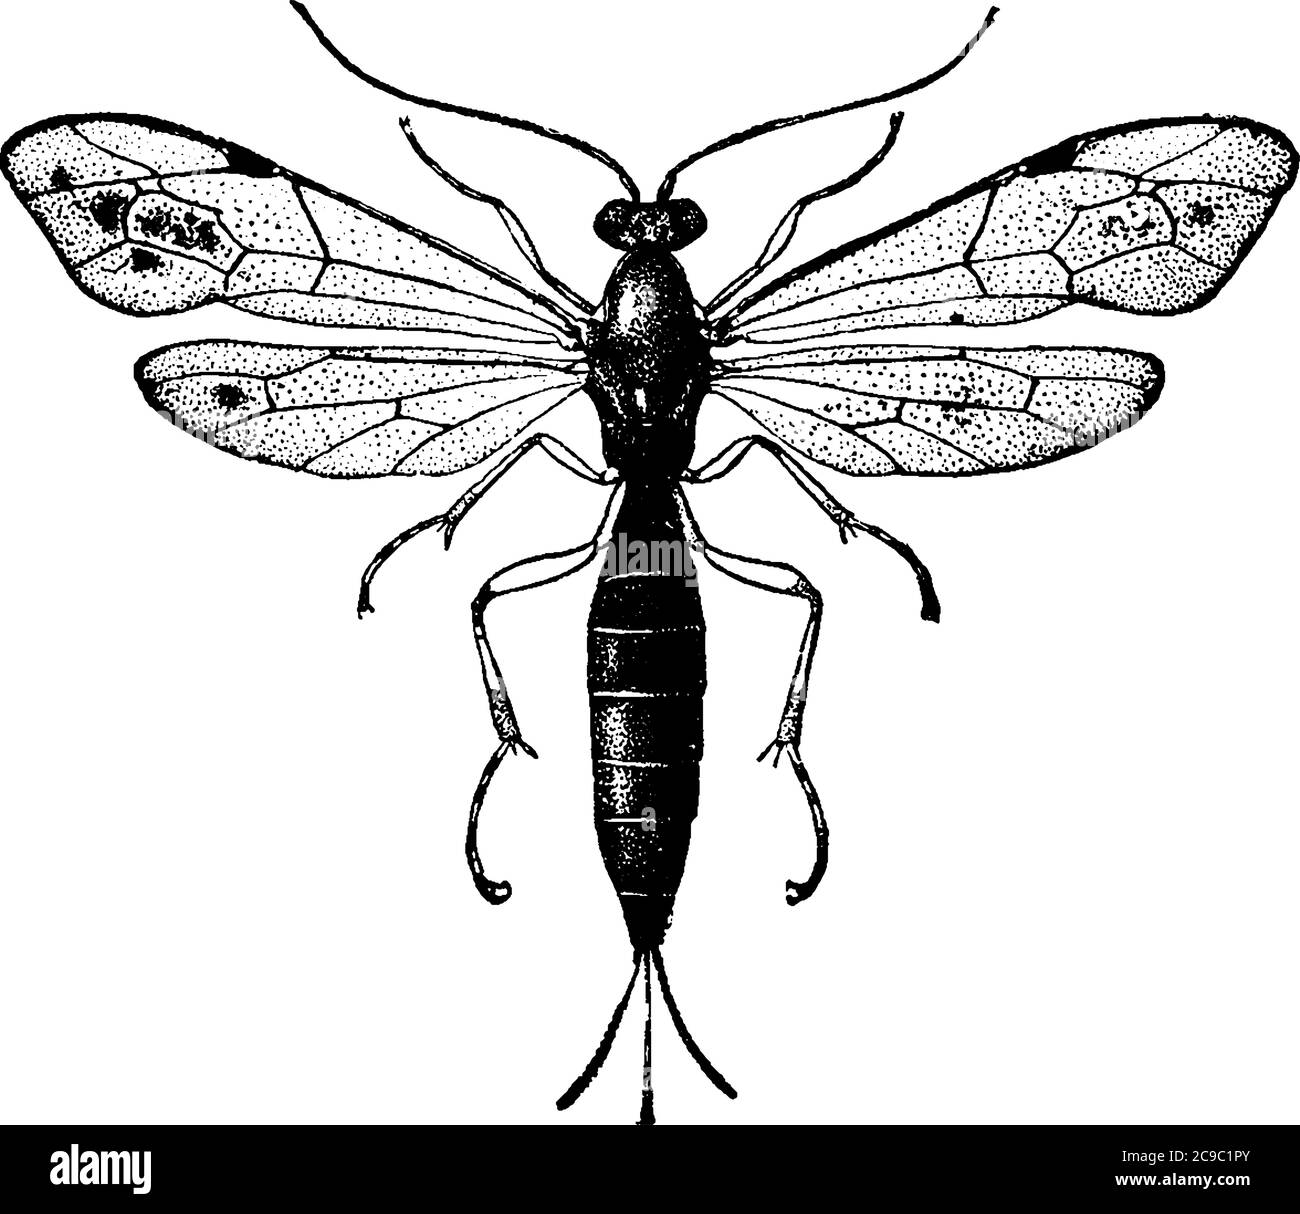 Une mouche adulte maigre de l'espèce, Pimpla Conquisitor, avec une tête et un corps plus foncés. Leurs avant-brewings et les ailes arrière ont une veine comme la structure passant par Illustration de Vecteur